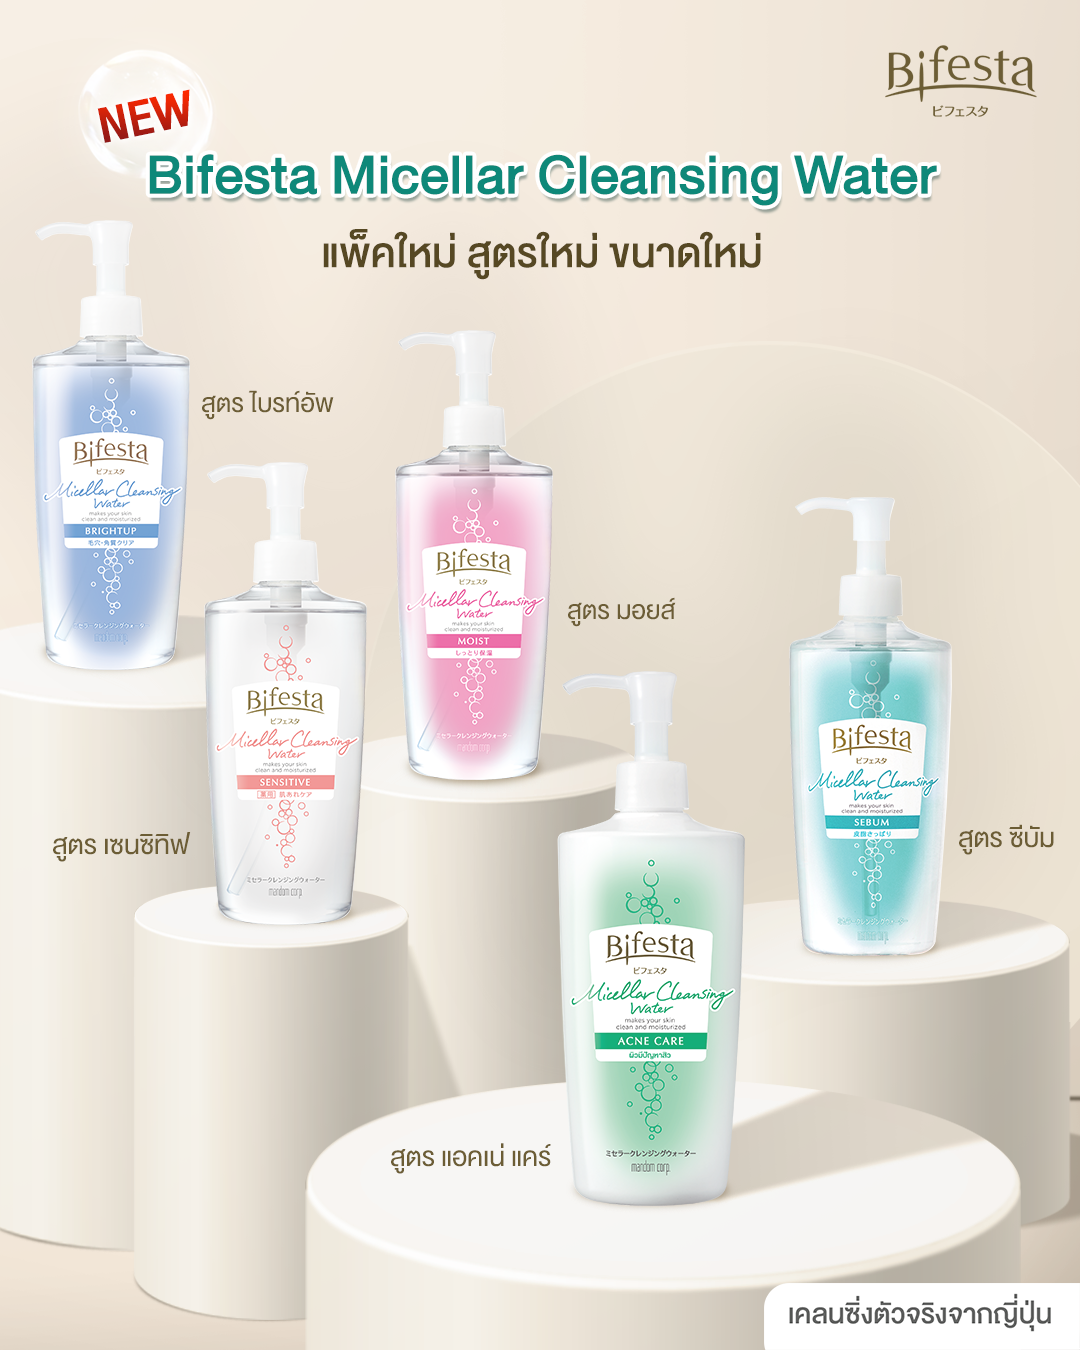 Bifesta Micellar Cleansing Water Acne